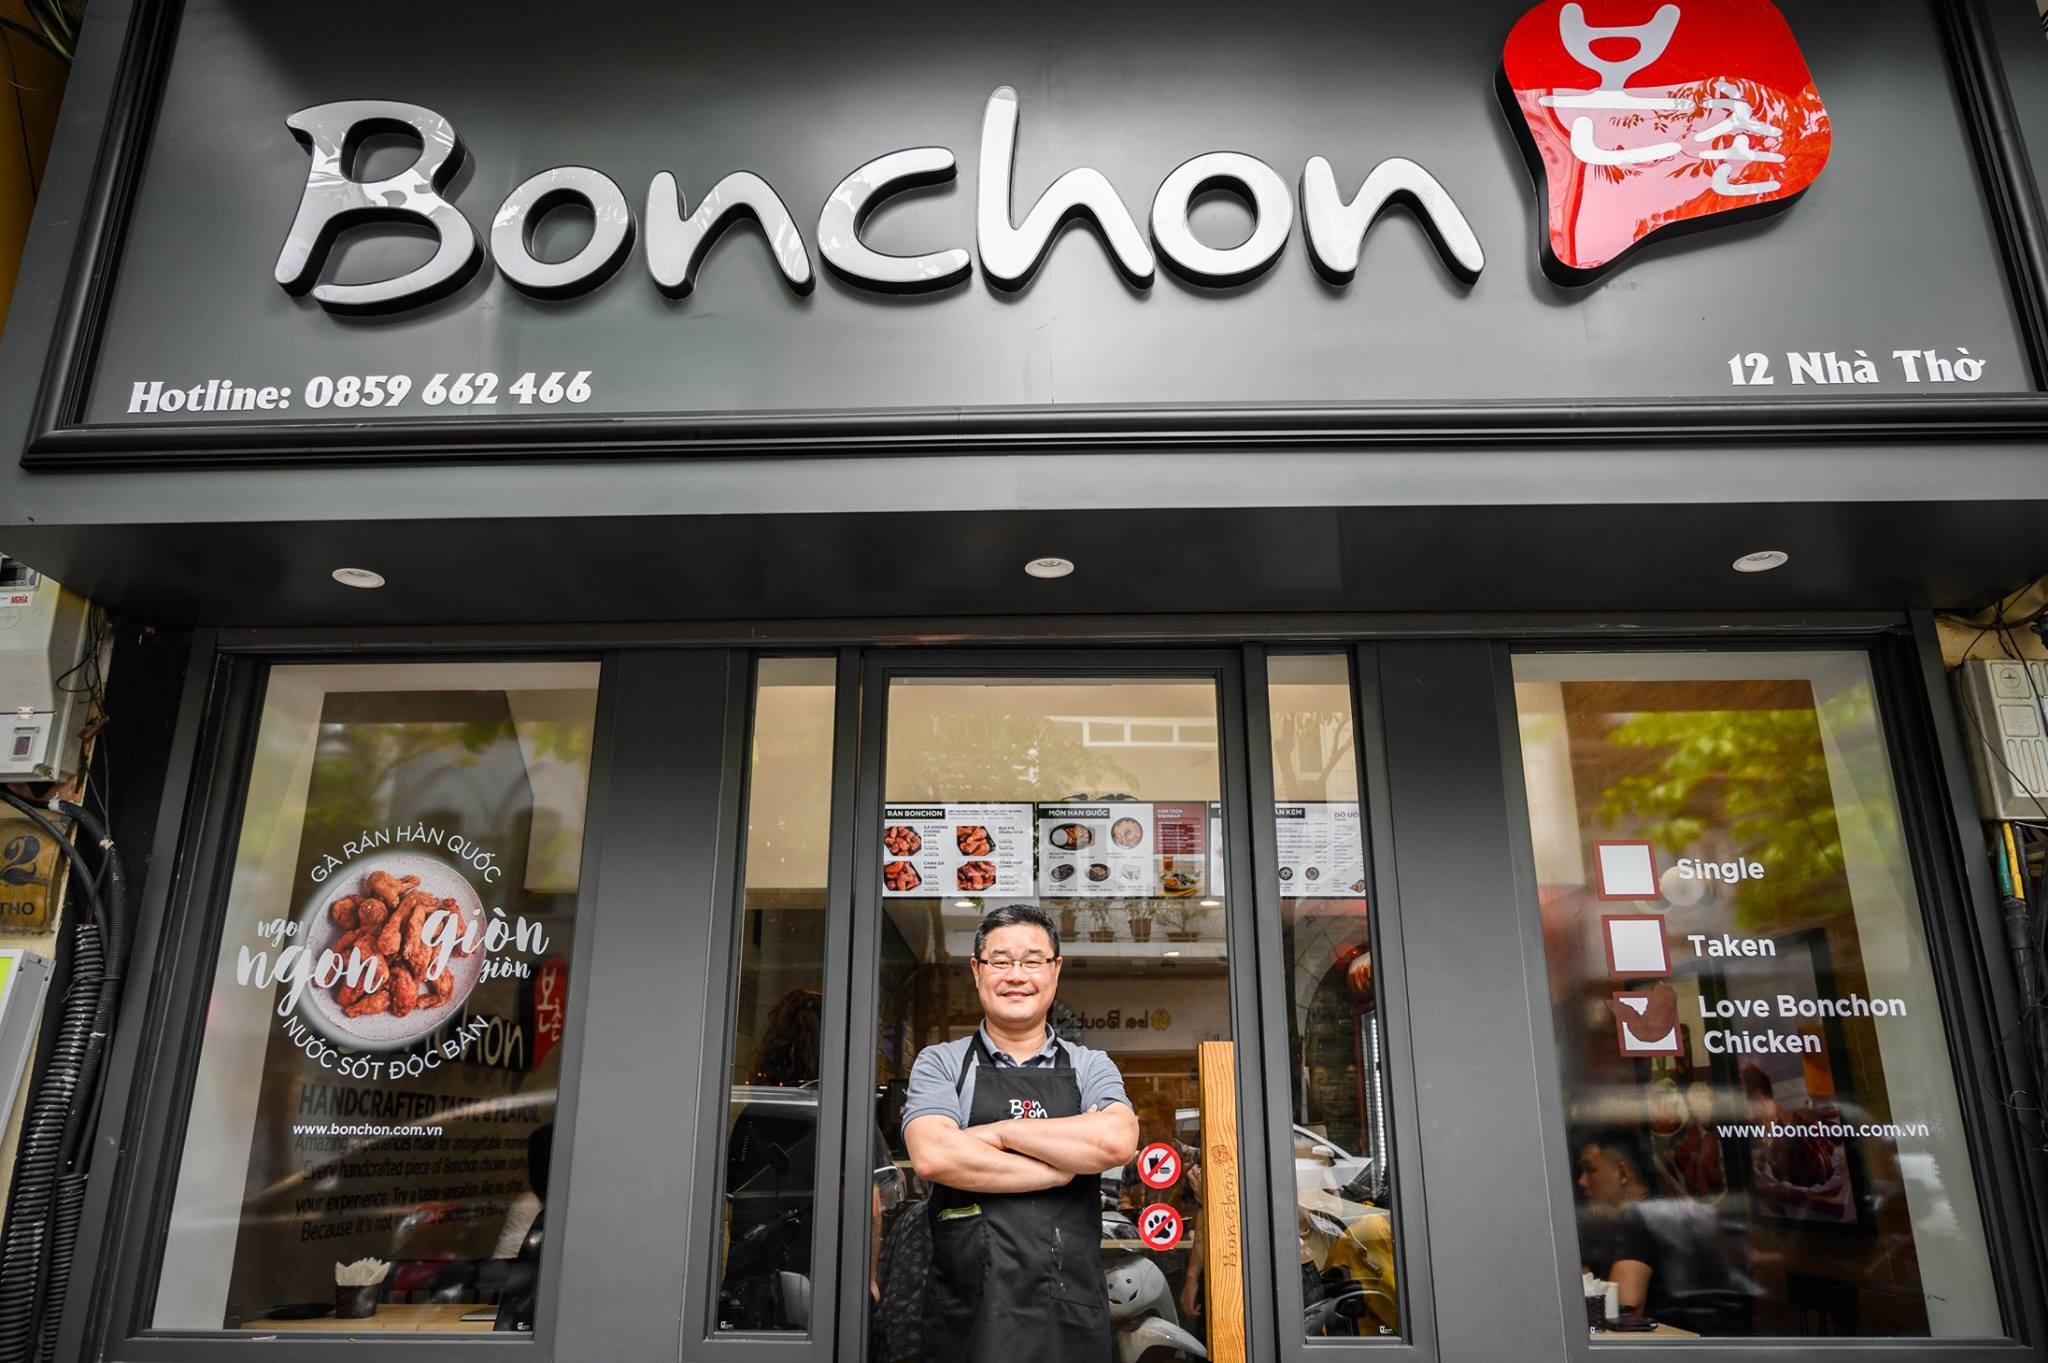 
Bonchon khai trương cửa hàng thứ 9 và chuẩn bị cho cửa hàng thứ 10 và 11 vào tháng 11 này
